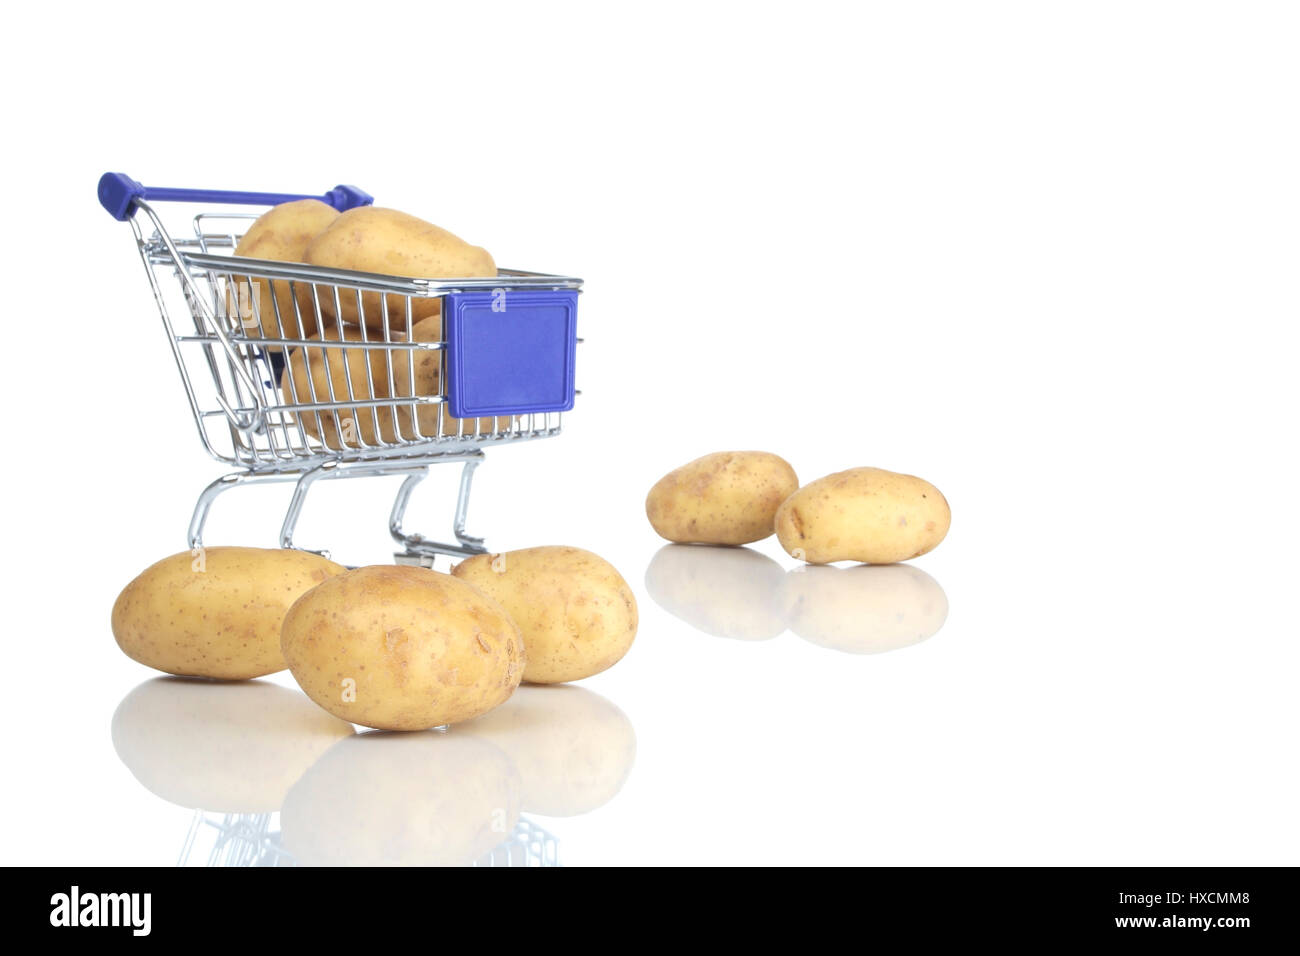 Shopping carts and potato, Einkaufswagen und Kartoffel Stock Photo